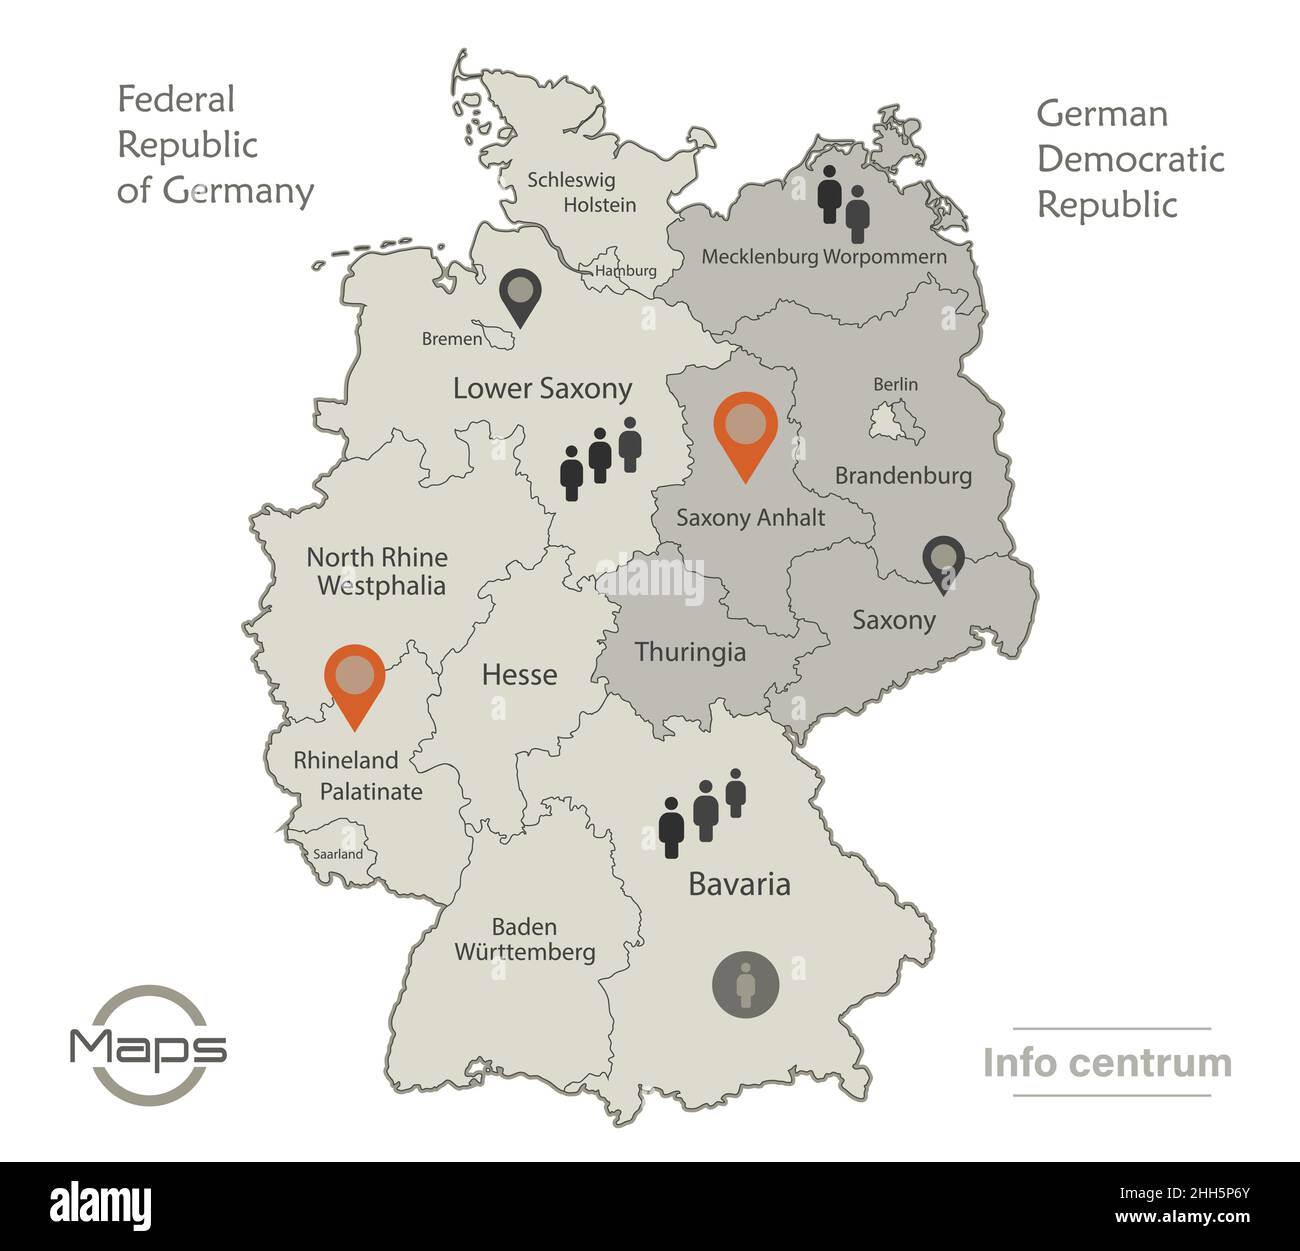 Deutschland Karte aufgeteilt auf West-und Ostdeutschland mit Regionen und Namen Karte, Infografiken und Symbole Vektor Stock Vektor